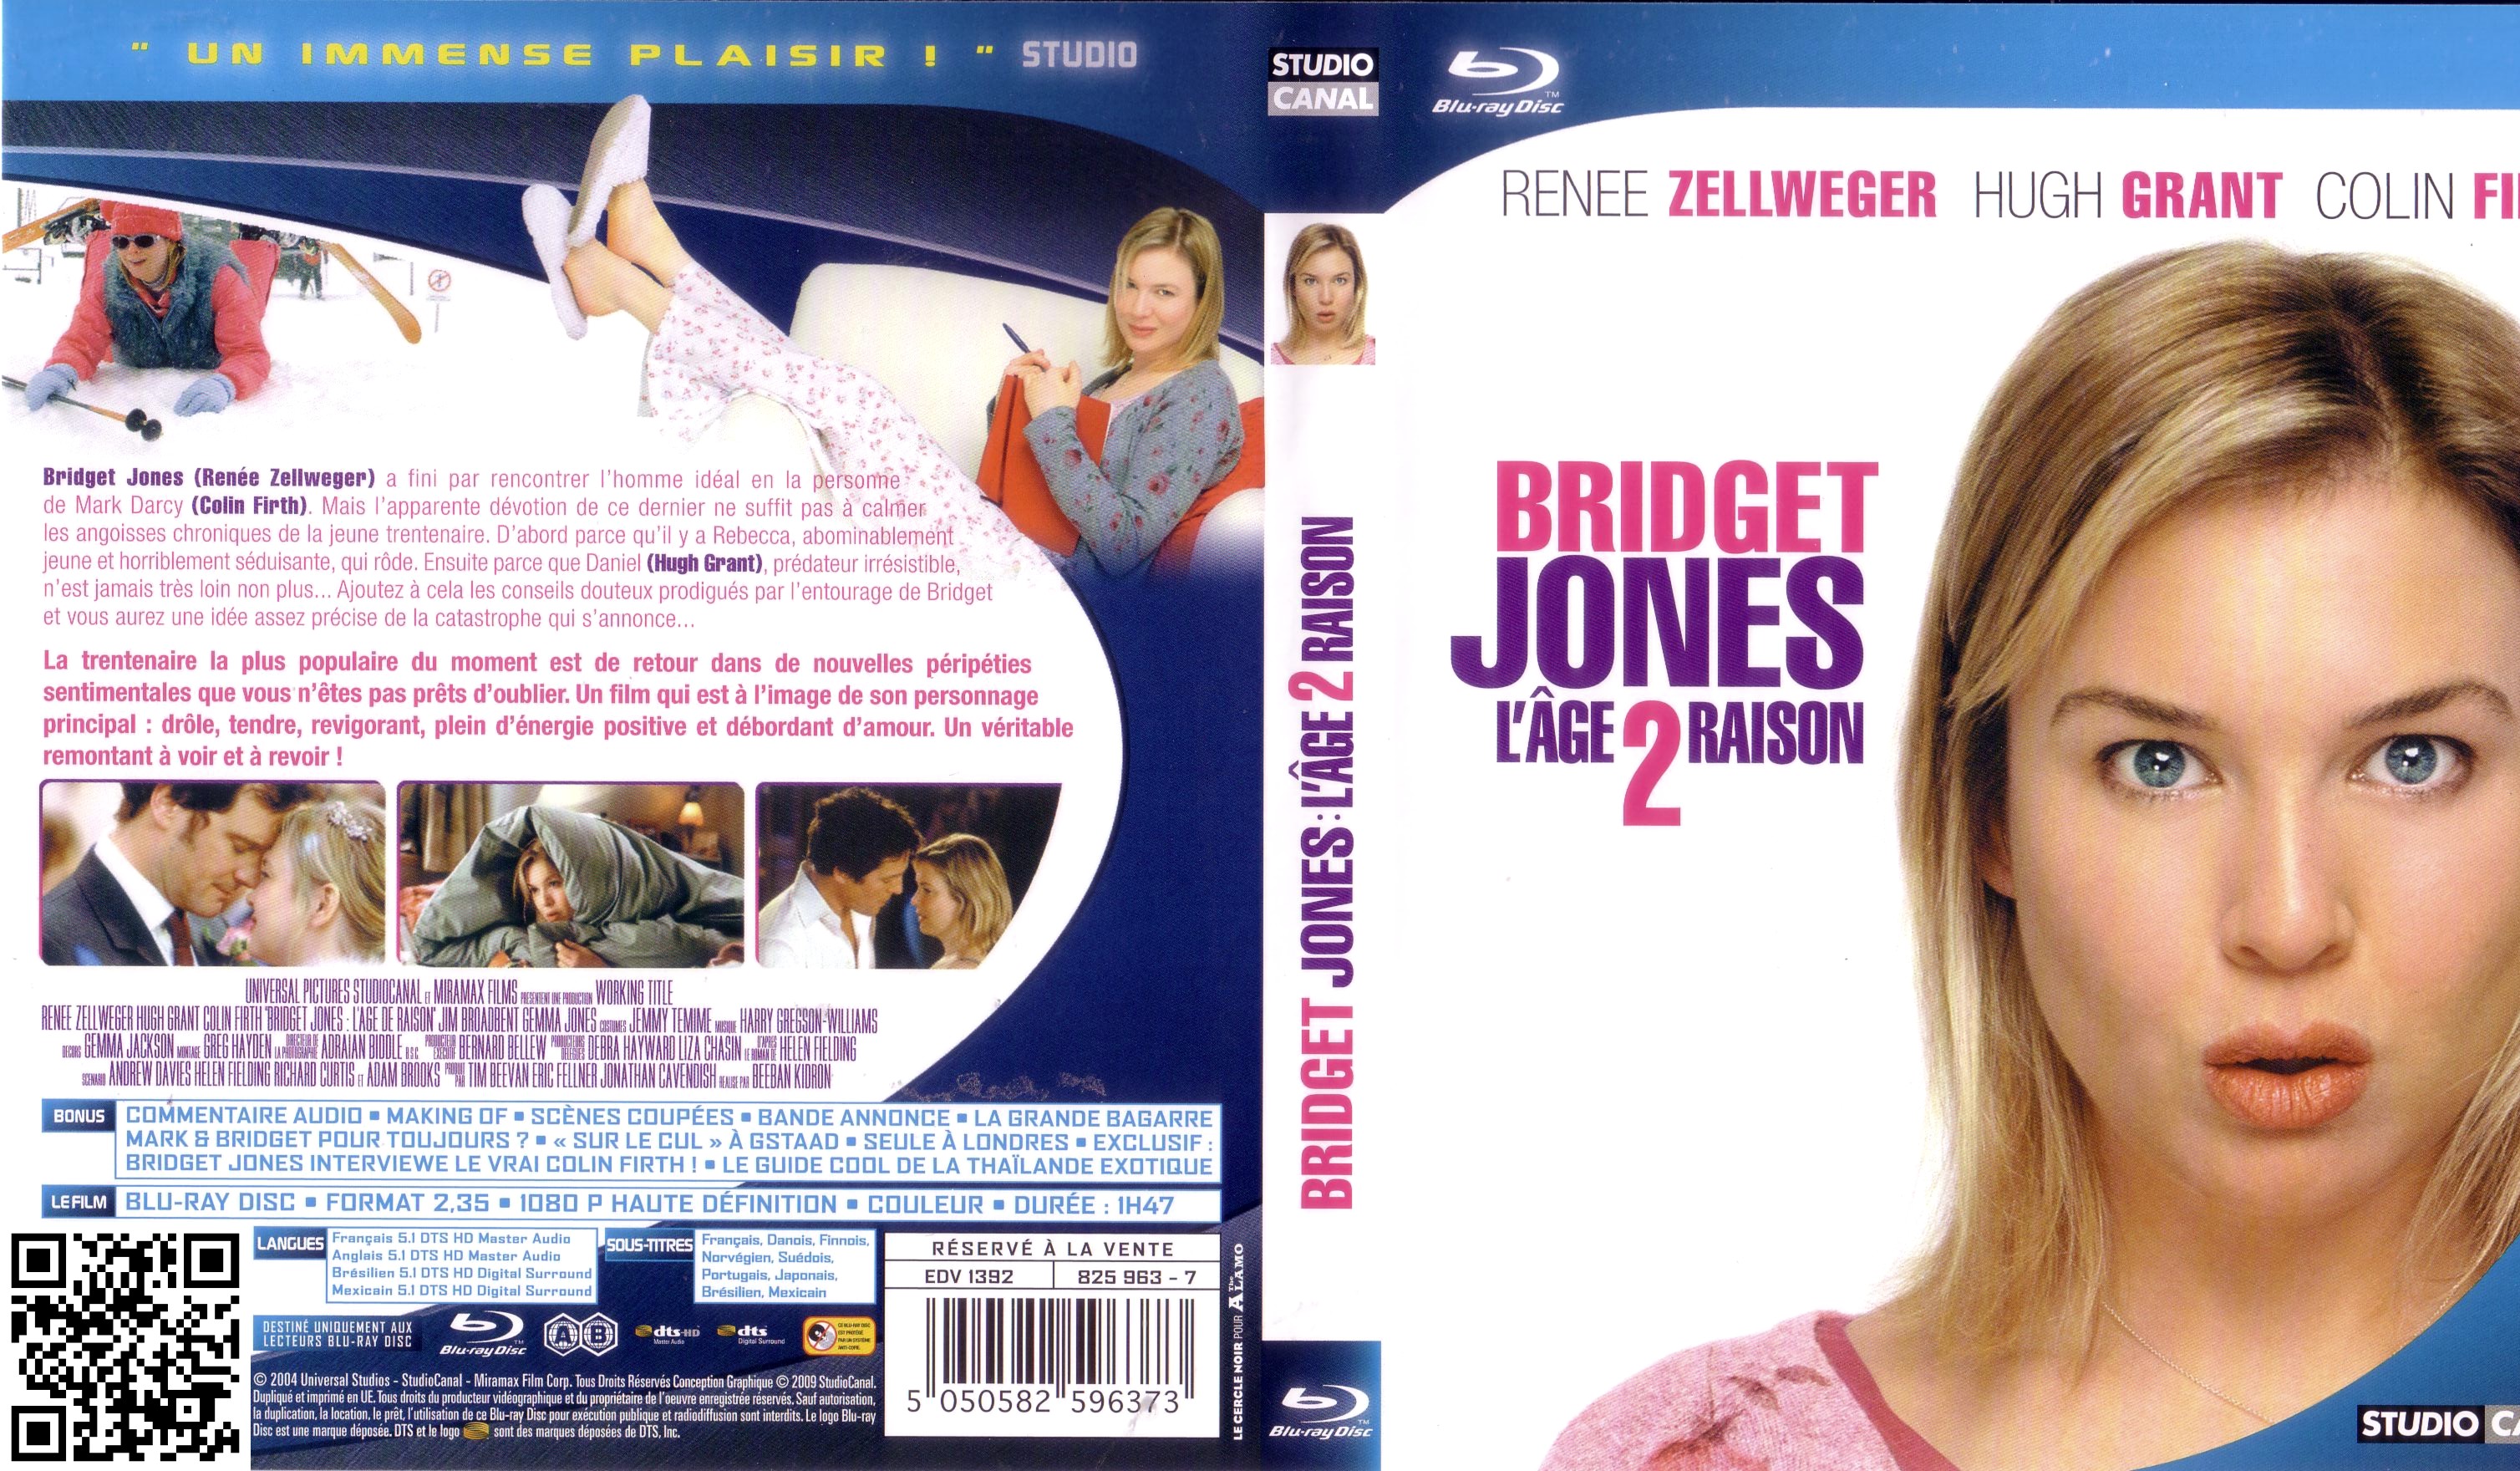 Jaquette DVD Bridget Jones L